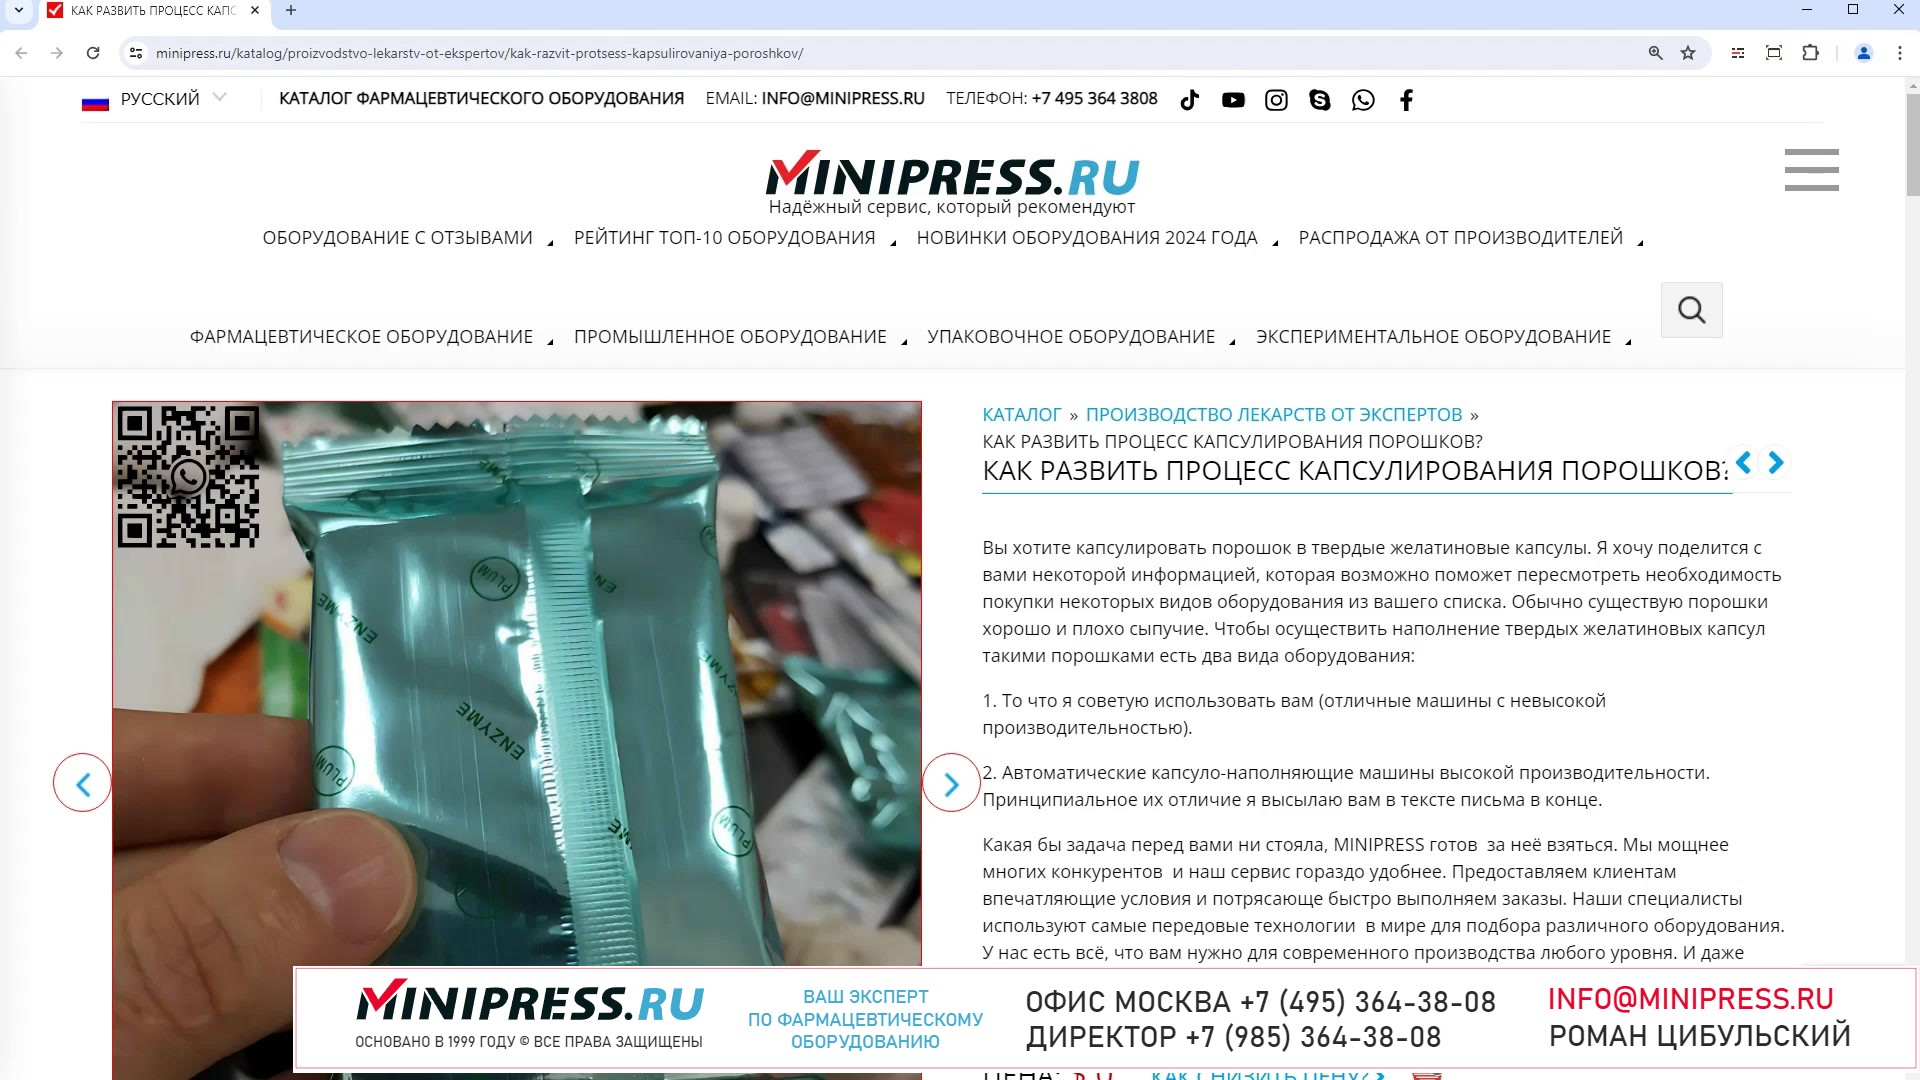 Minipress.ru Как развить процесс капсулирования порошков